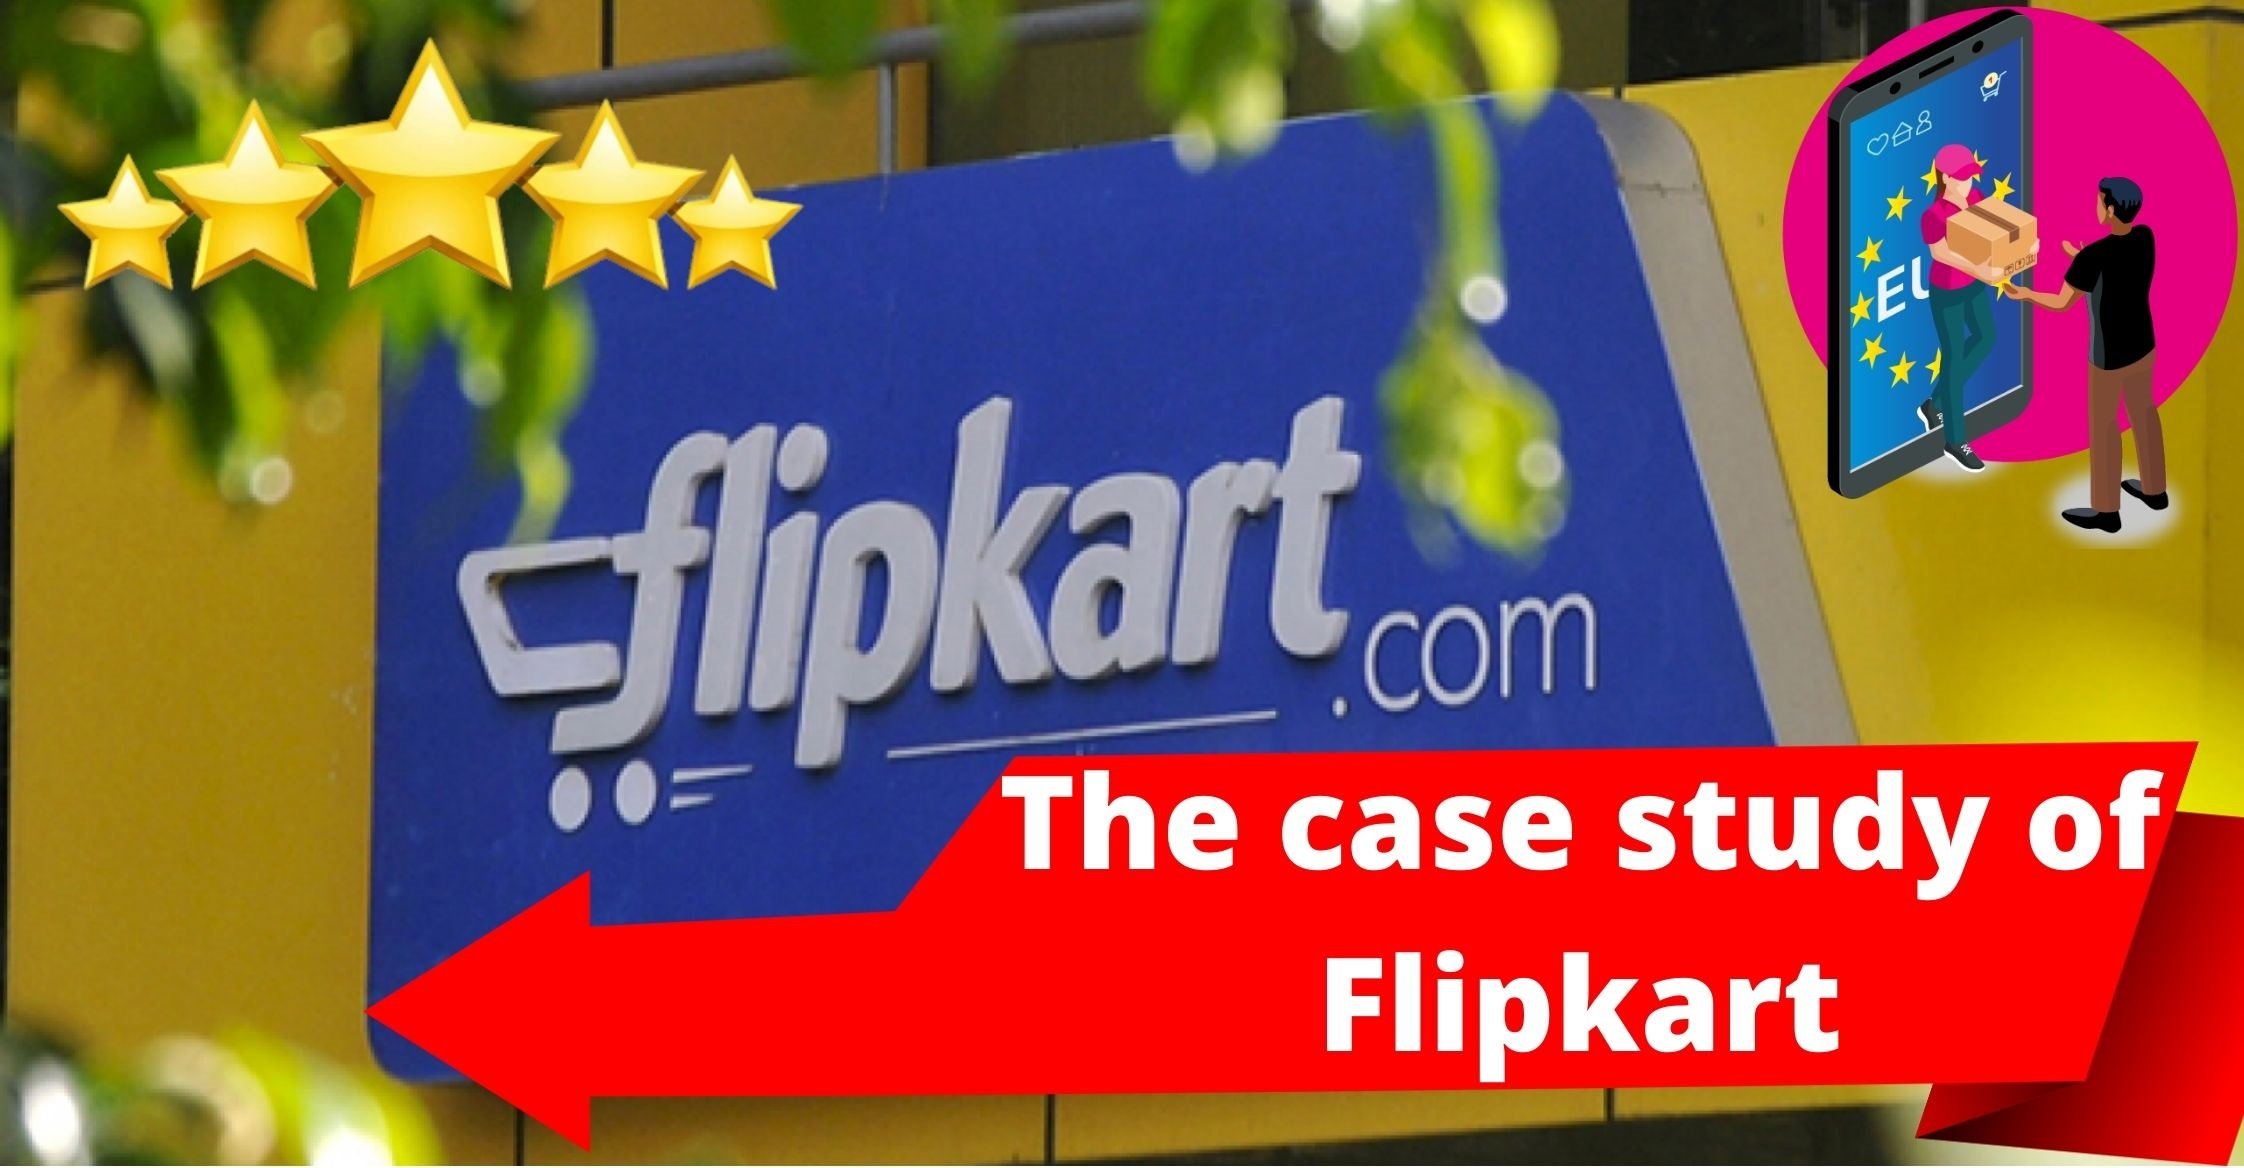 THE CASE STUDY OF FLIPKART